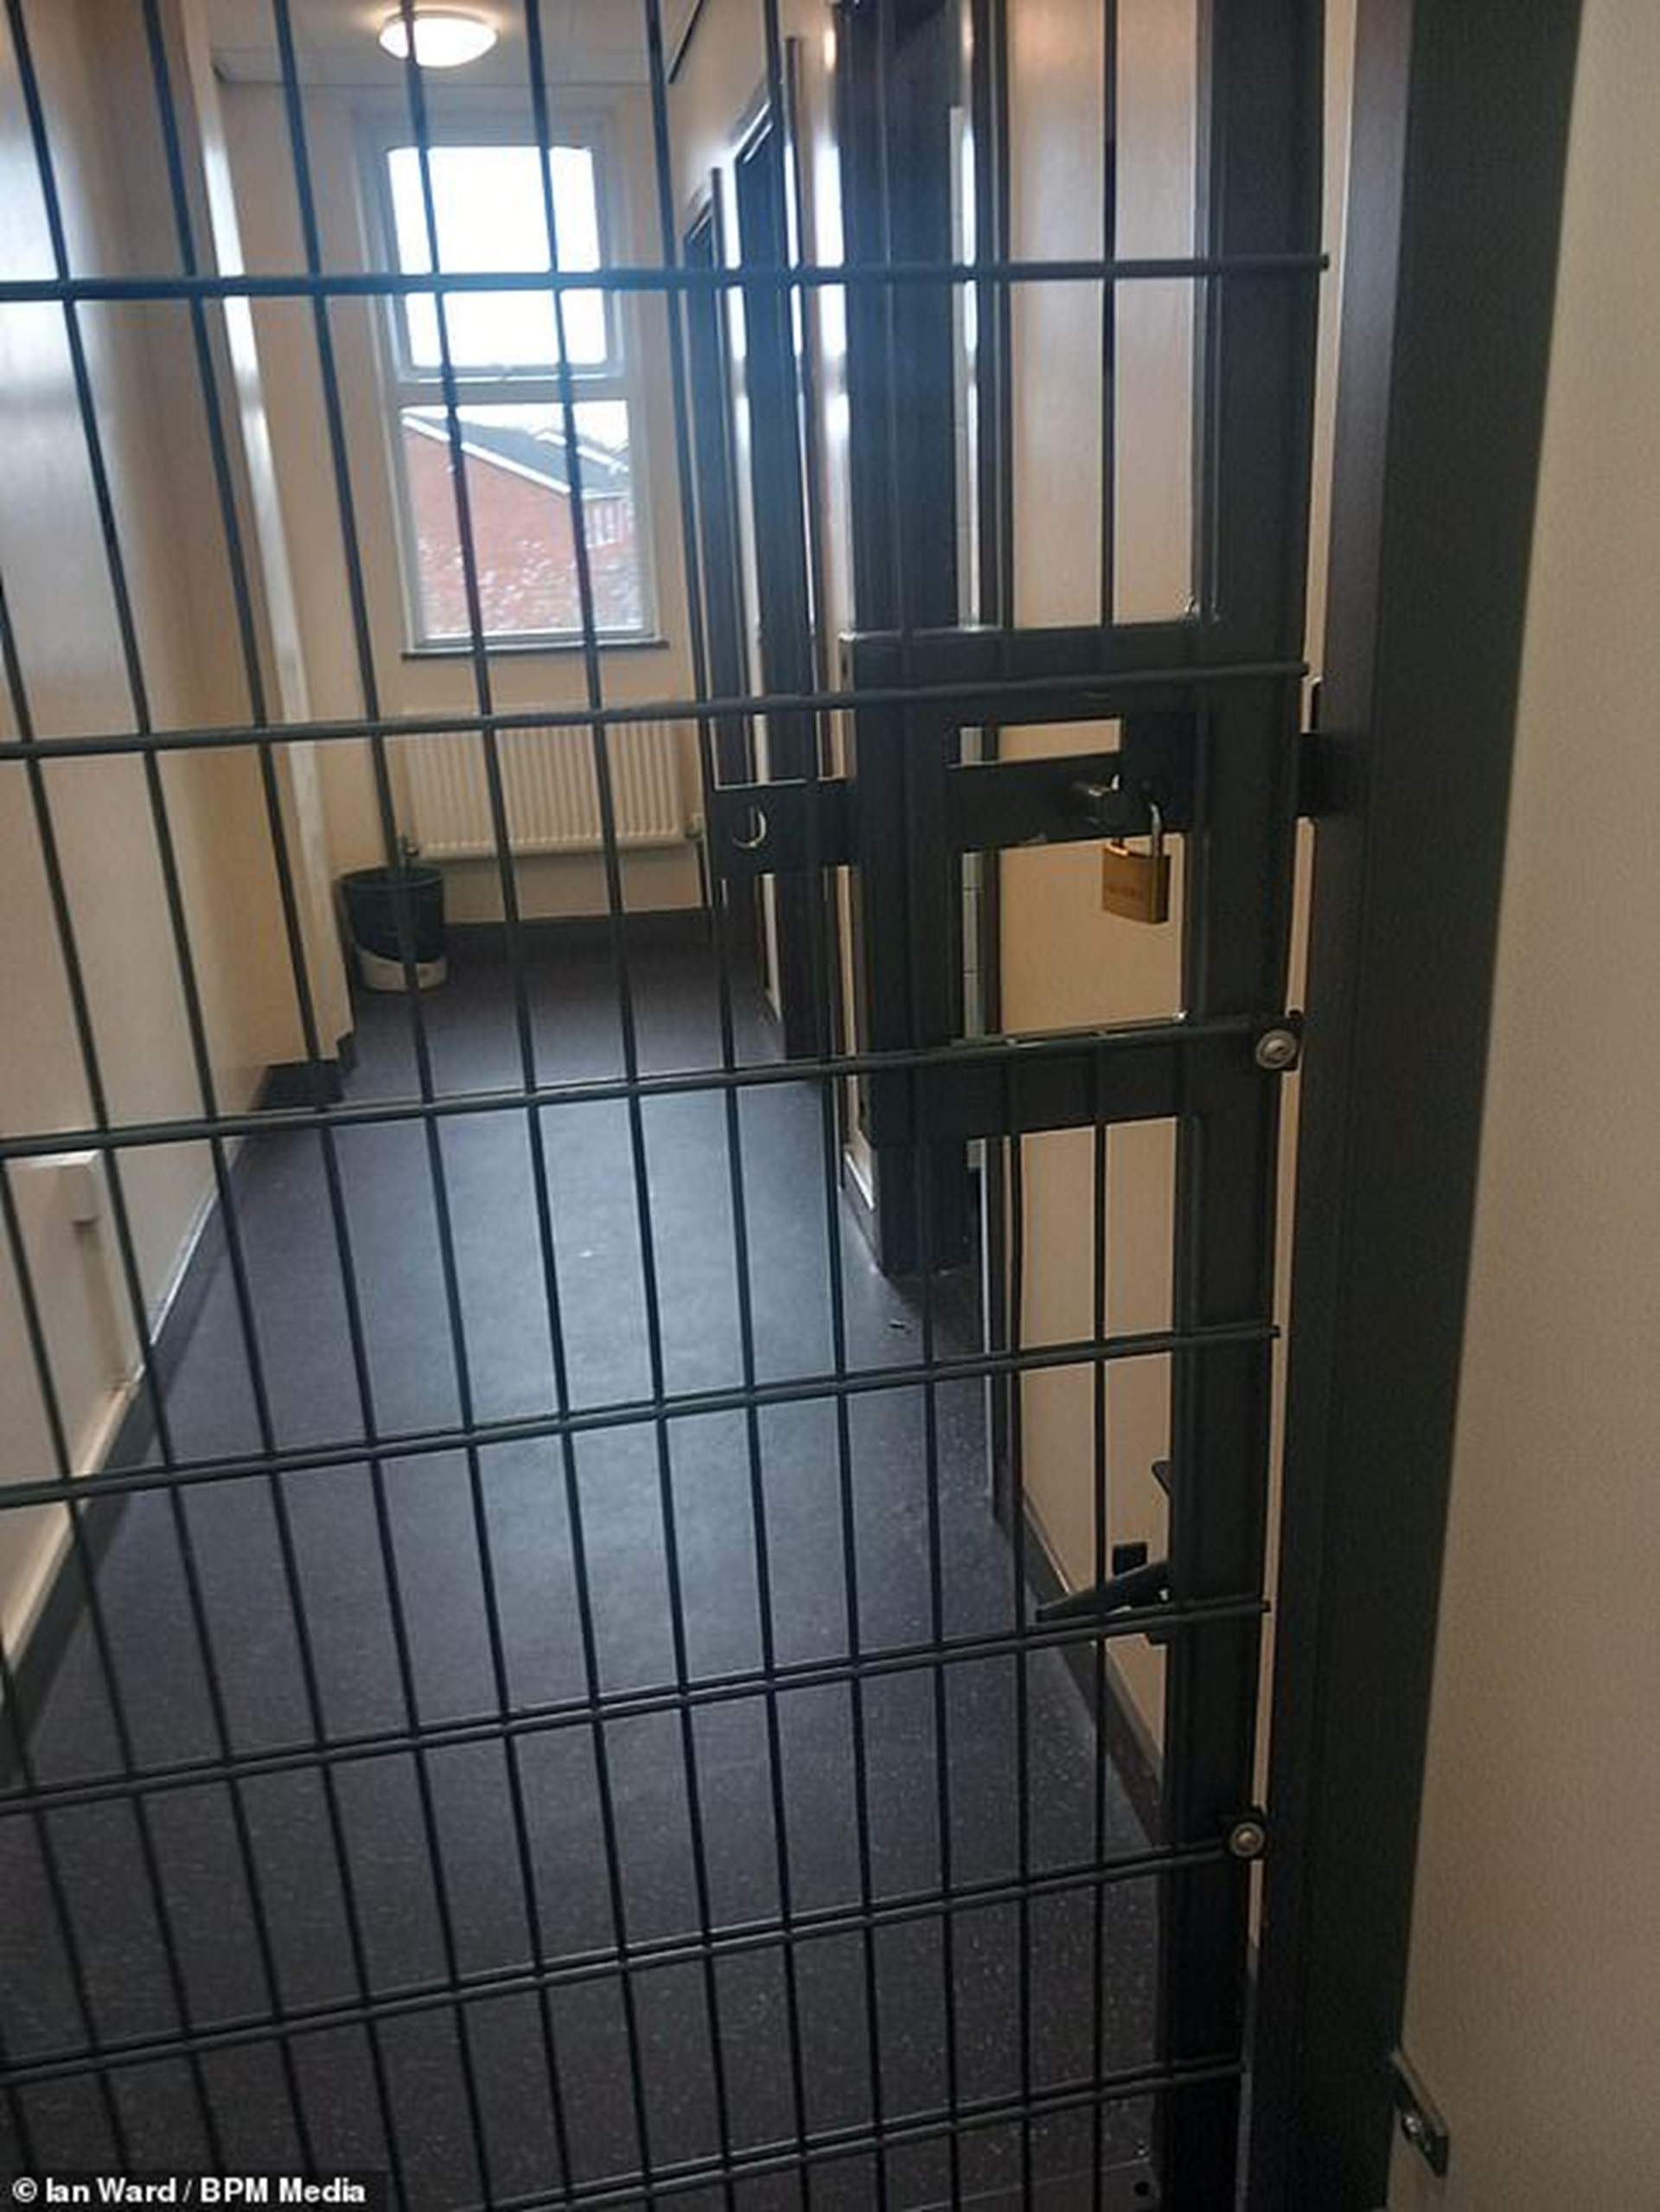 Polémica en una escuela de Reino Unido por instalar jaulas en las puertas del lavabo